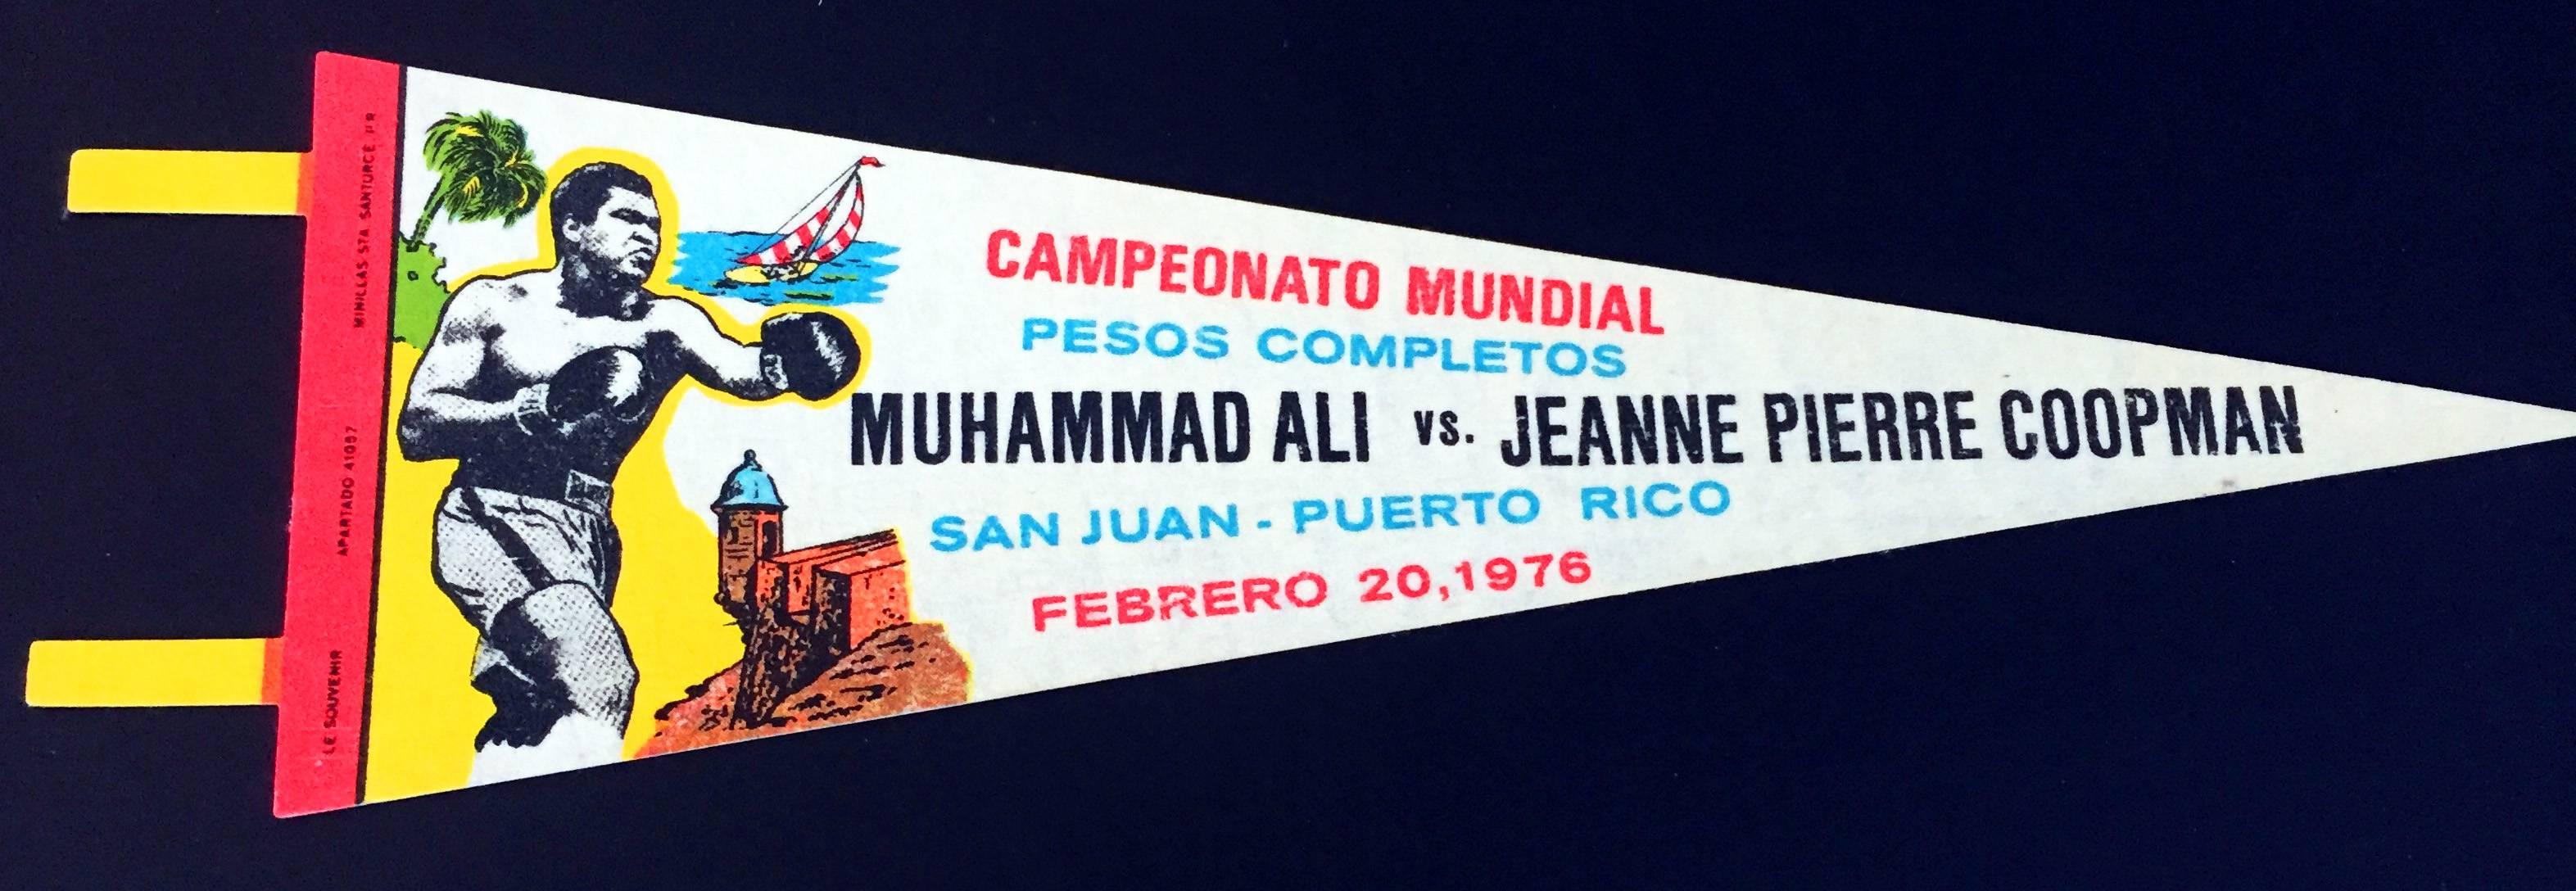 Muhammad Ali
Vintage Original, wie neu, Souvenir-Wimpel: Muhammad Ali gegen Jeanne Pierre Coopman, 20. Februar 1976 im Roberto Clemente Coliseum in San Juan, Puerto Rico. 

Kräftige, scharfe Farben; ausgezeichnete Druckqualität. Keine Heftlöcher.